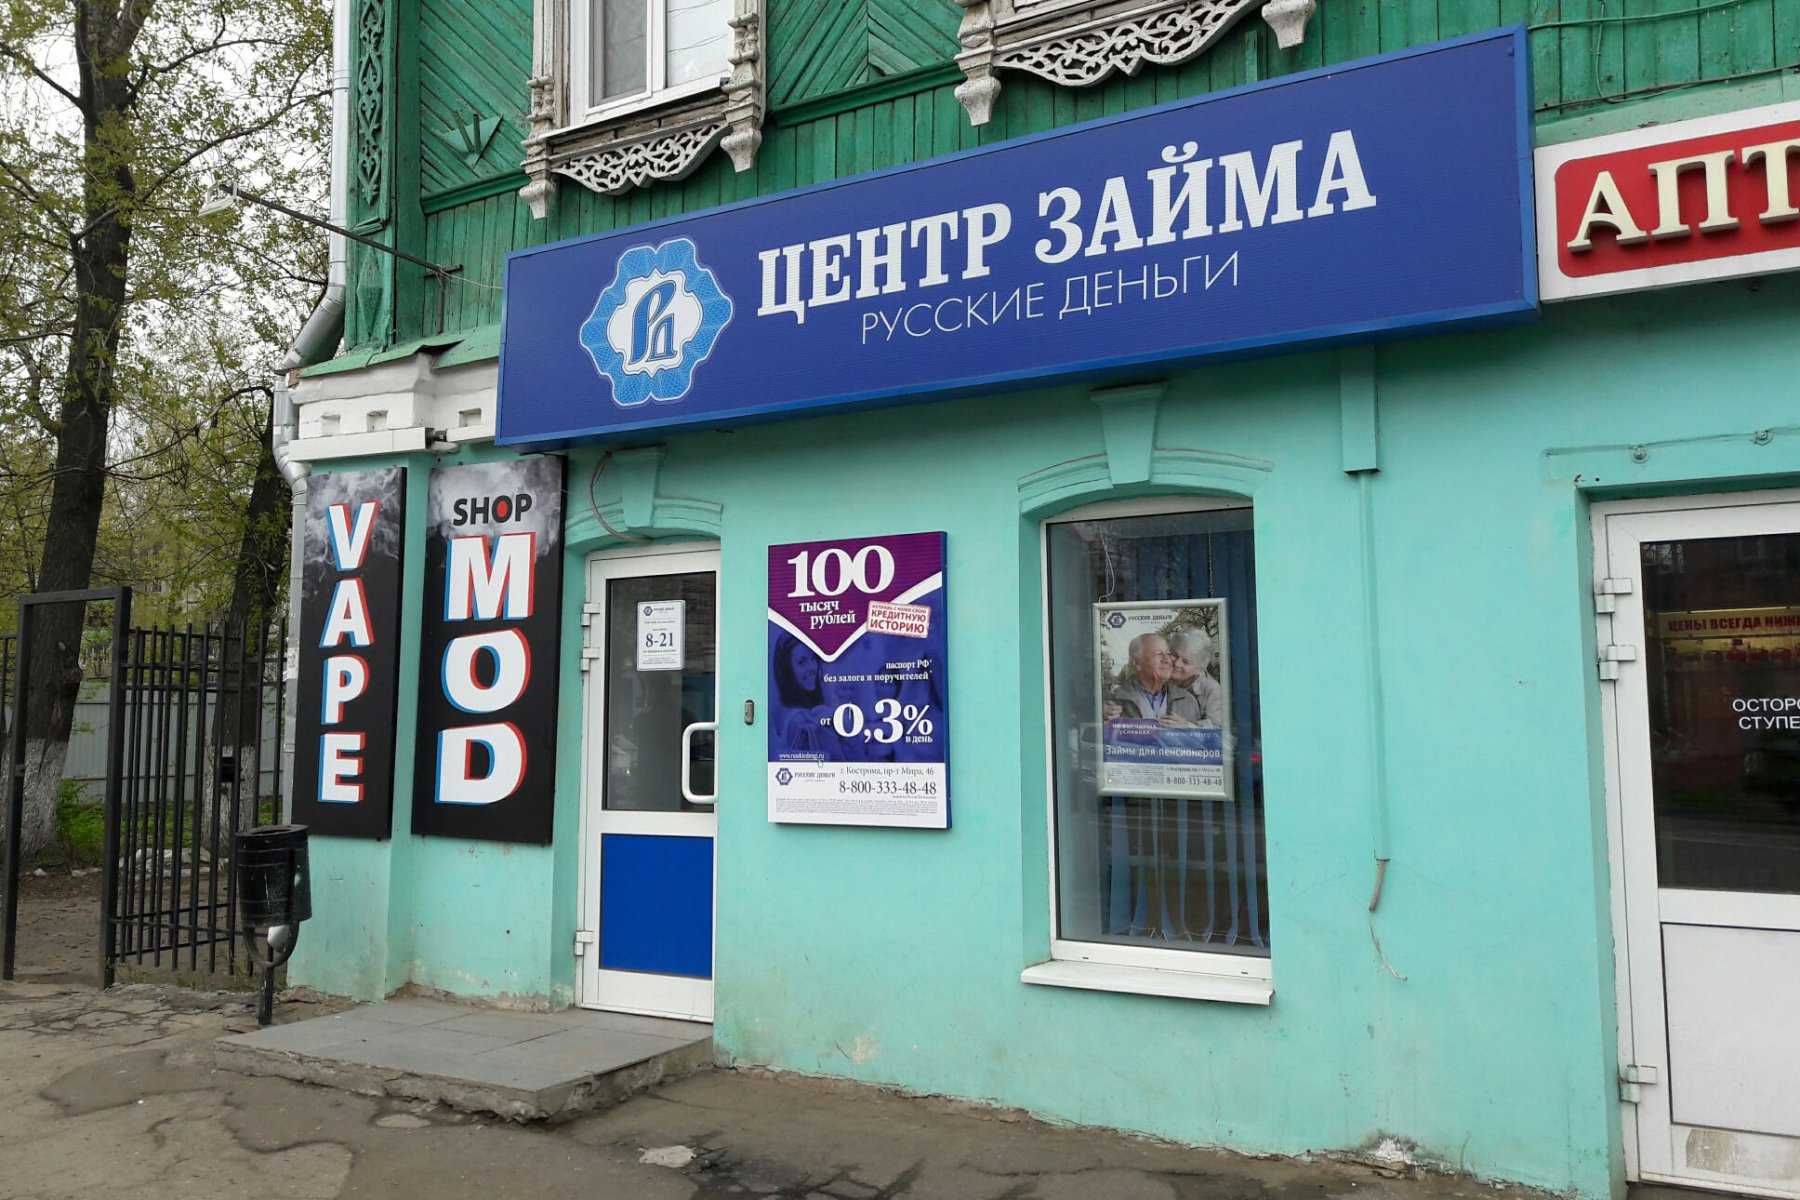 Займ с доставкой на дом в Костроме срочно онлайн